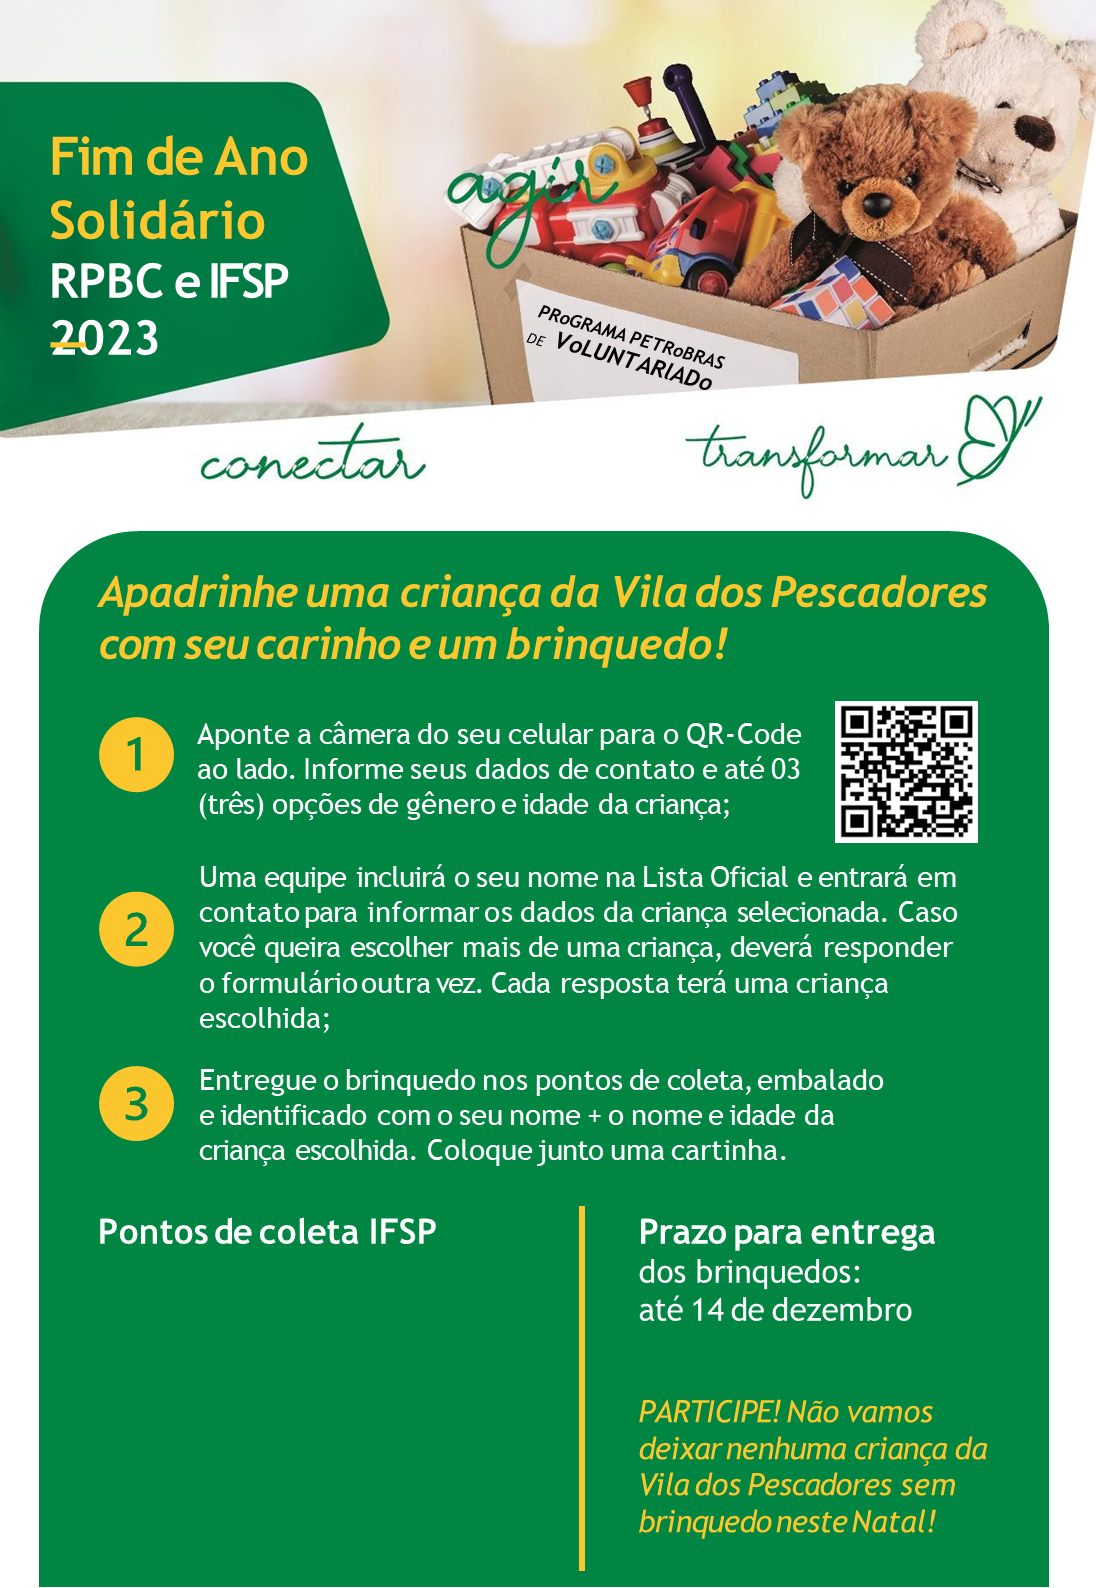 A3 Natal solidario IFSP RPBC